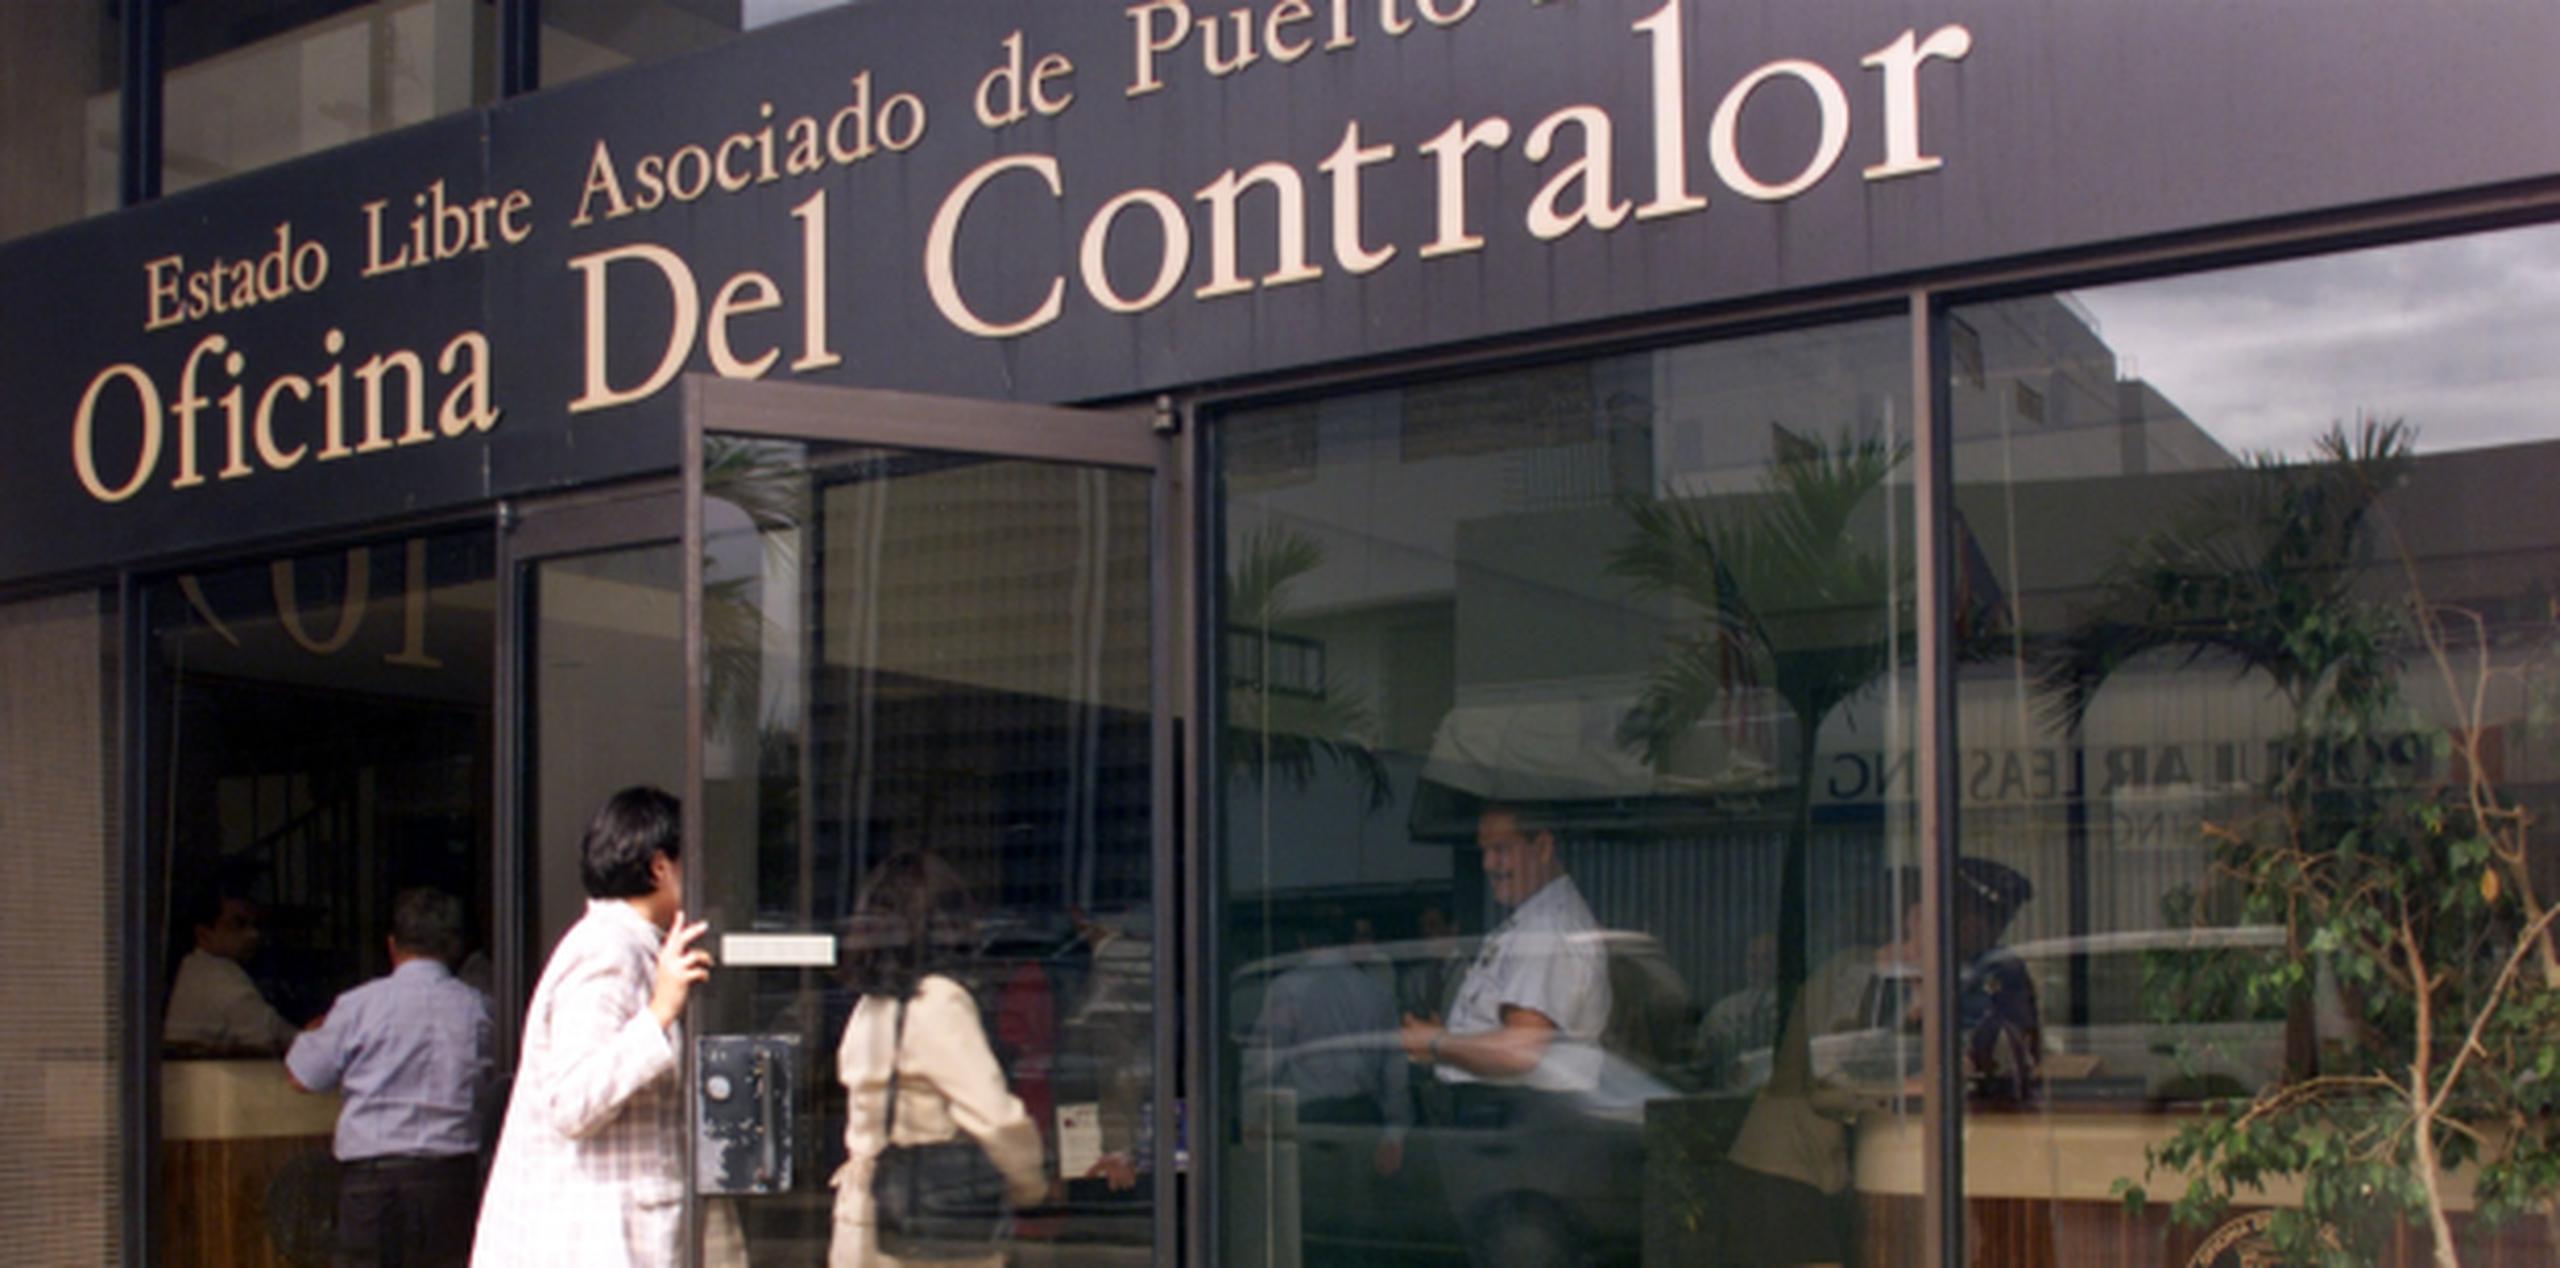 A pesar de los numerosos señalamientos al municipio de Las Piedras, el informe de la contraloría emitió una opinión favorable "con excepciones" sobre sus operaciones fiscales. (Archivo)